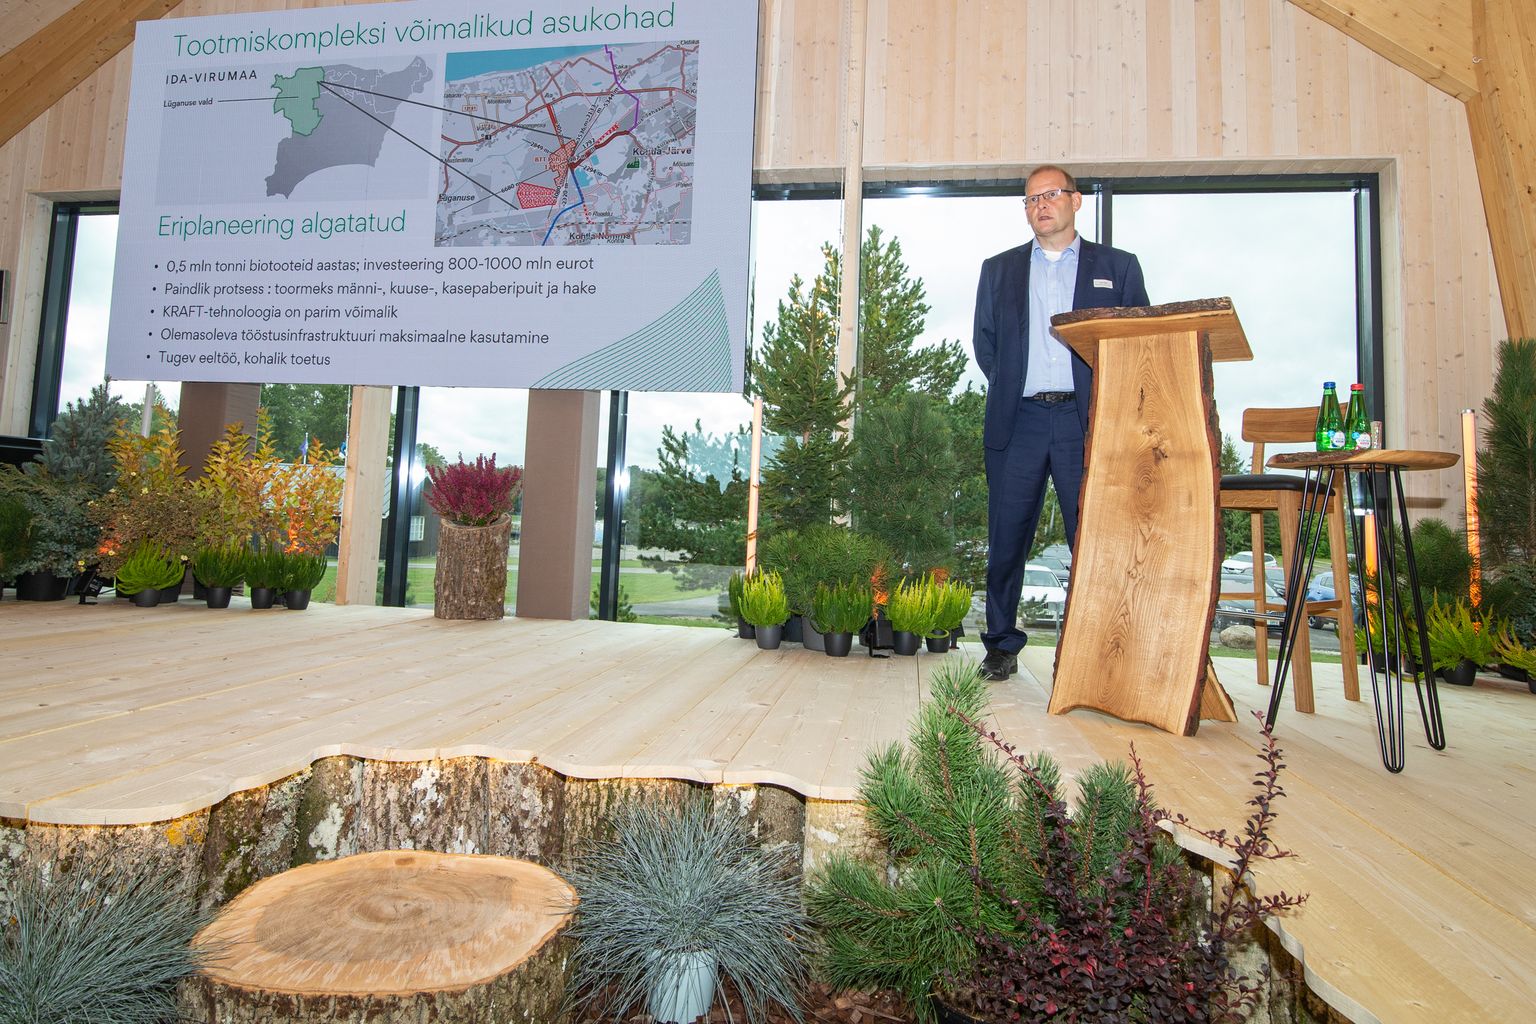 Лаури Райд, менеджер по развитию биопродуктов "VKG", констатировал, что слова и дела сейчас не совпадают: "Политически мы поддерживаем повышение ценности древесины, но на самом деле движемся к ее энергетическому использованию".